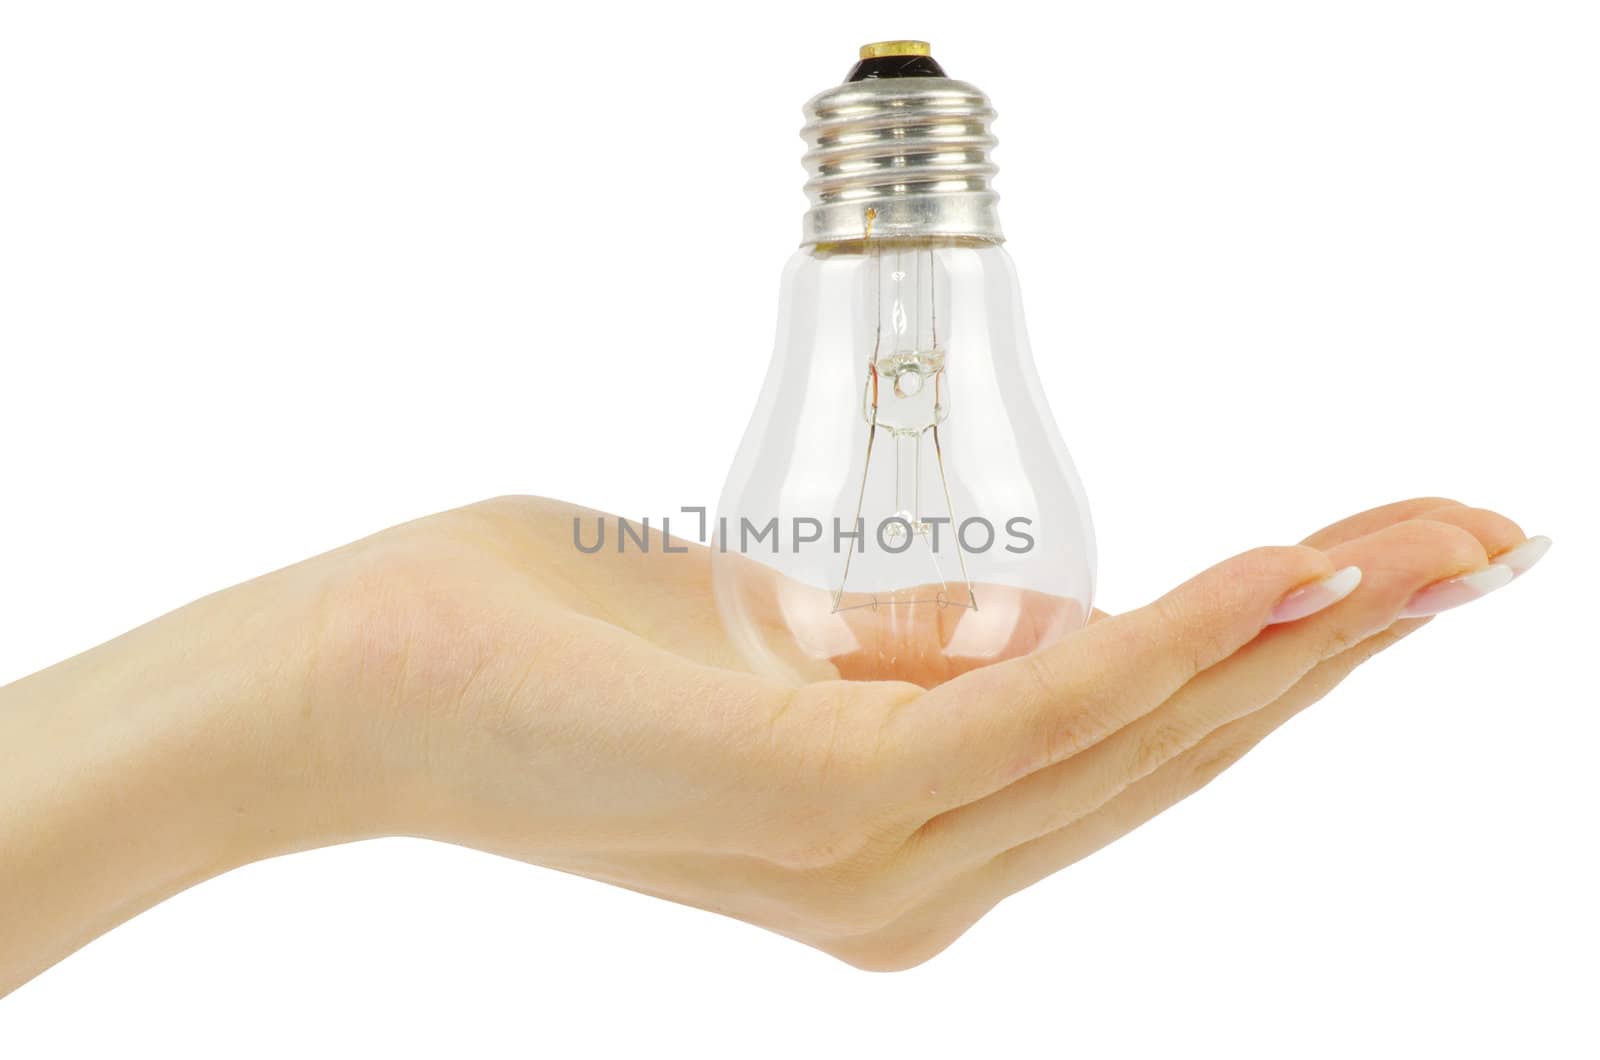  hand holding bulb  by Pakhnyushchyy